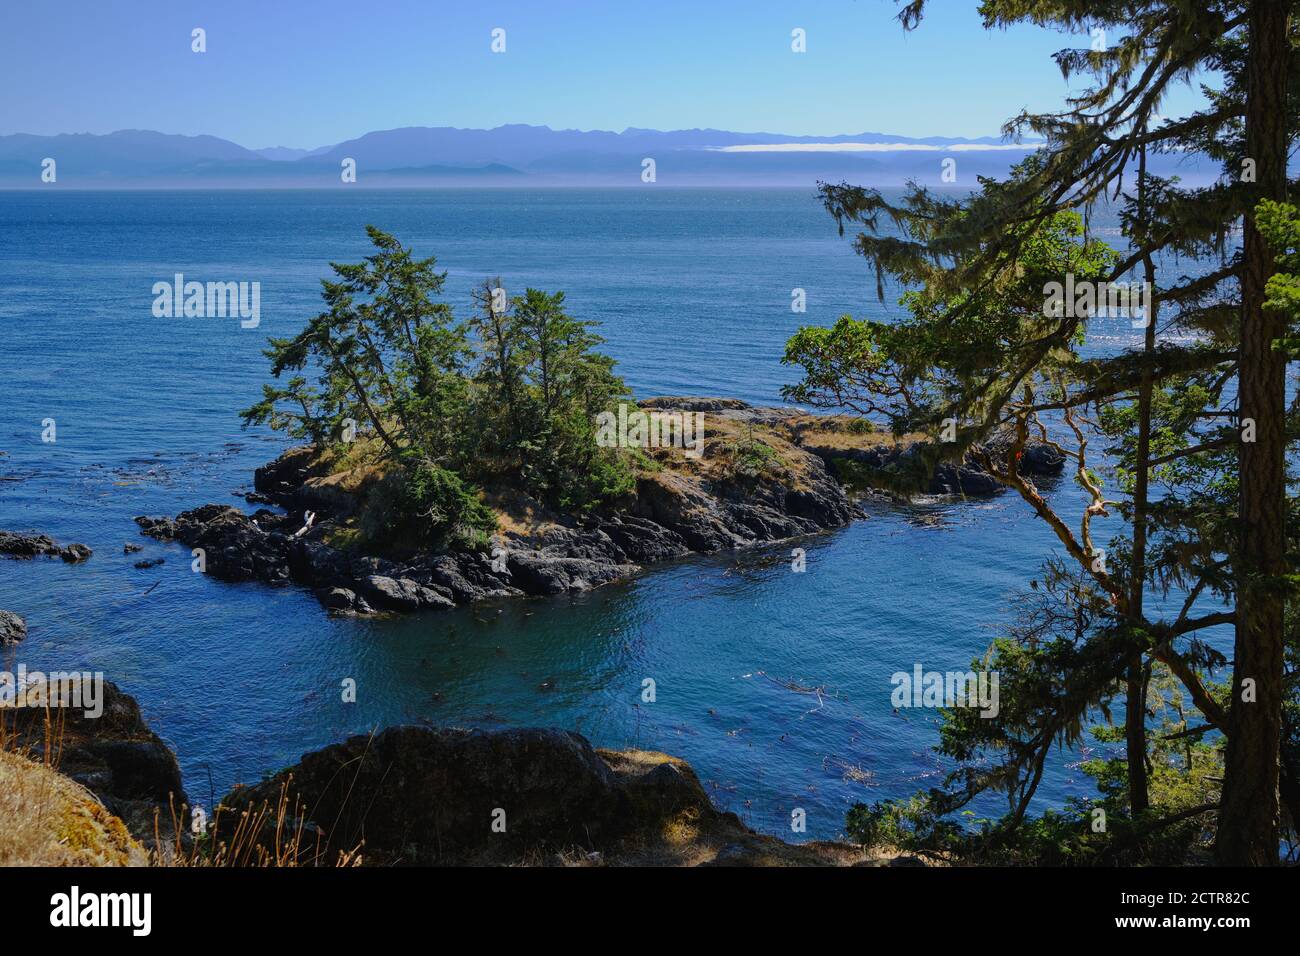 Vues sur les îlots boisés et les montagnes Olympic de l'État de Washington depuis le sentier côtier accidenté du parc régional East Sooke, île de Vancouver, Colombie-Britannique Banque D'Images